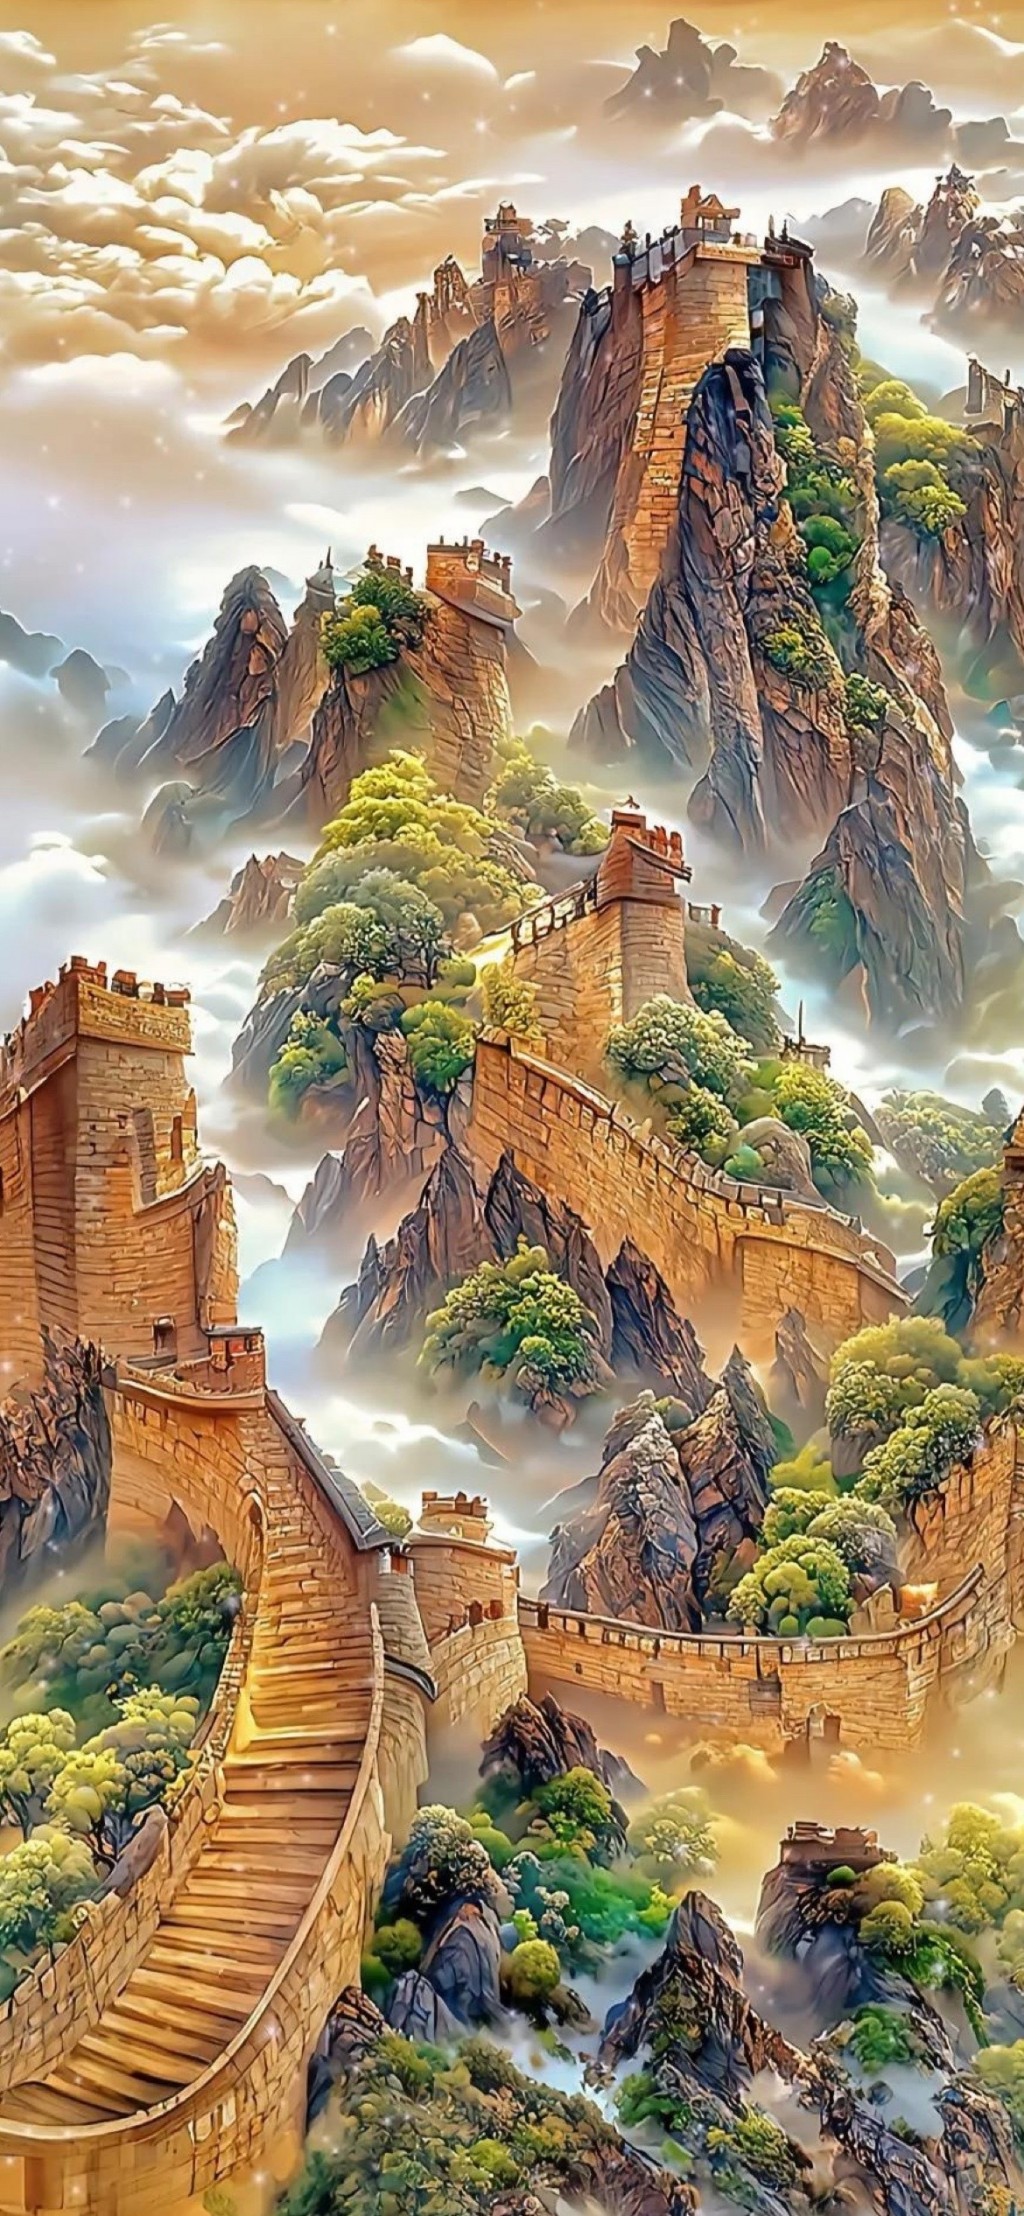 万里长城唯美彩绘风景插画手机壁纸